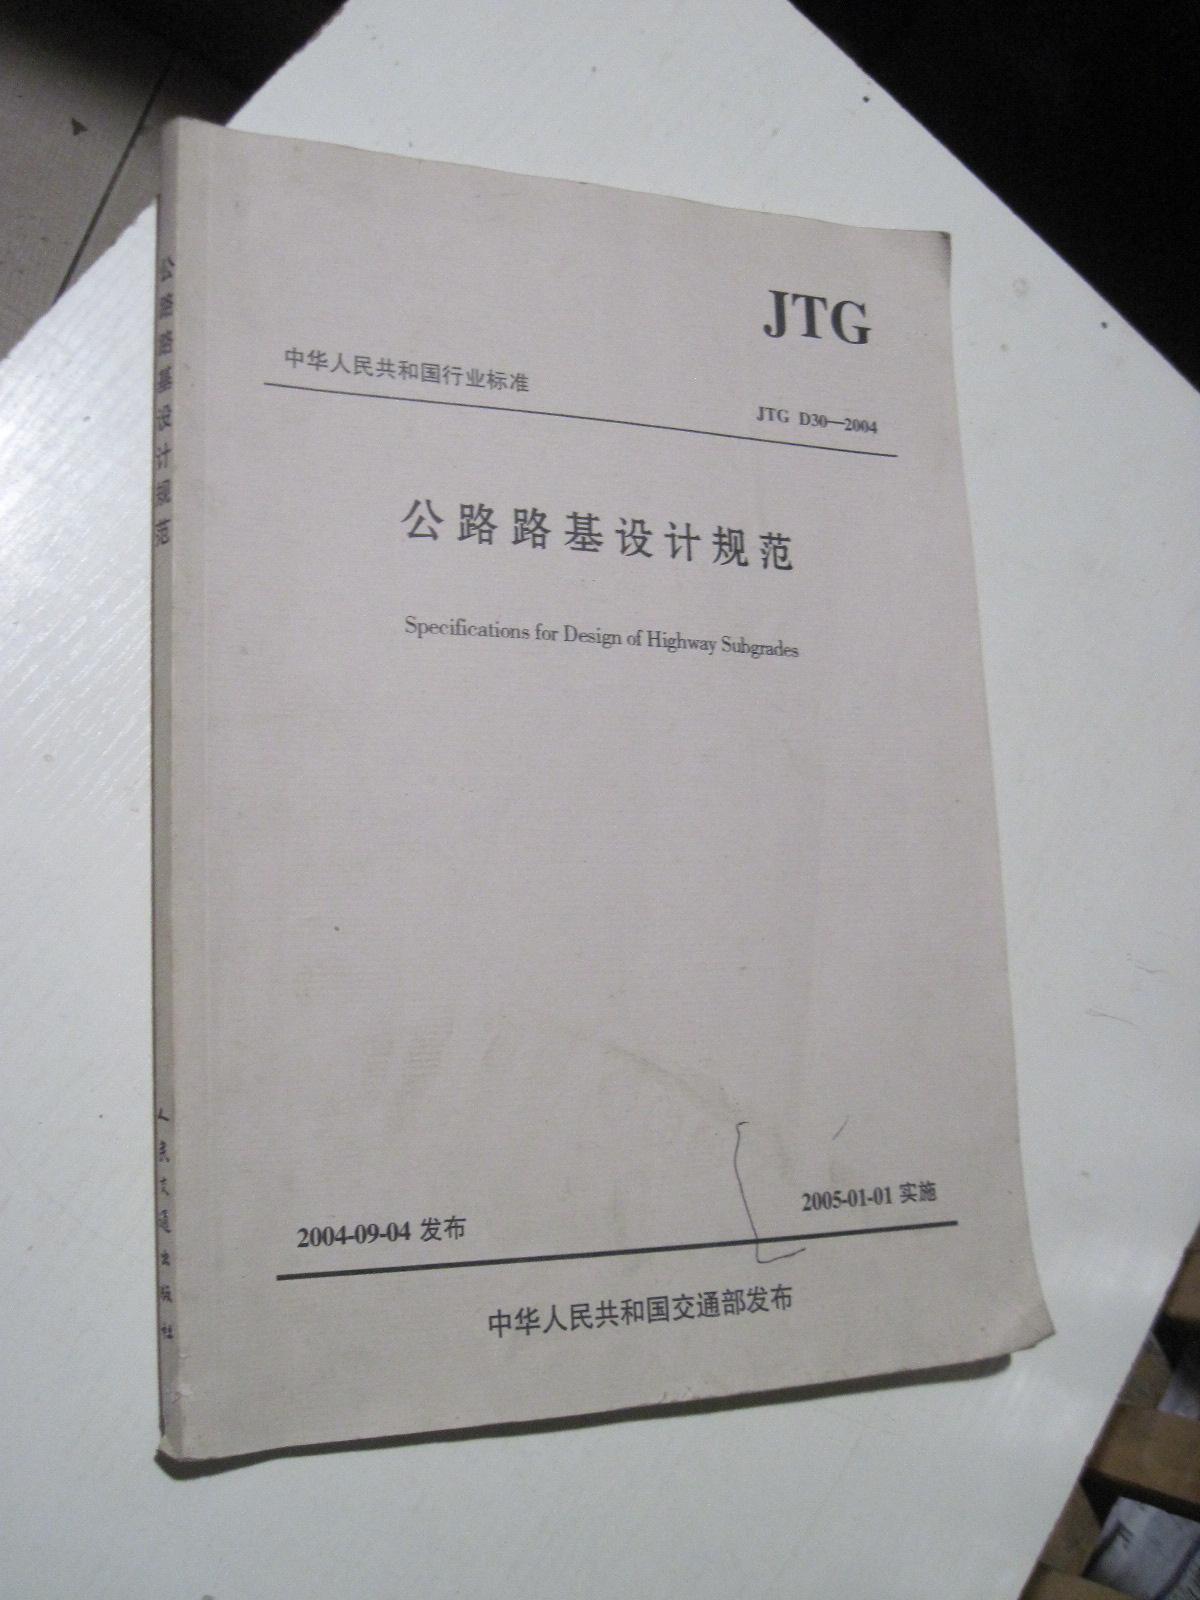 公路路基设计规范JTG D30-2004